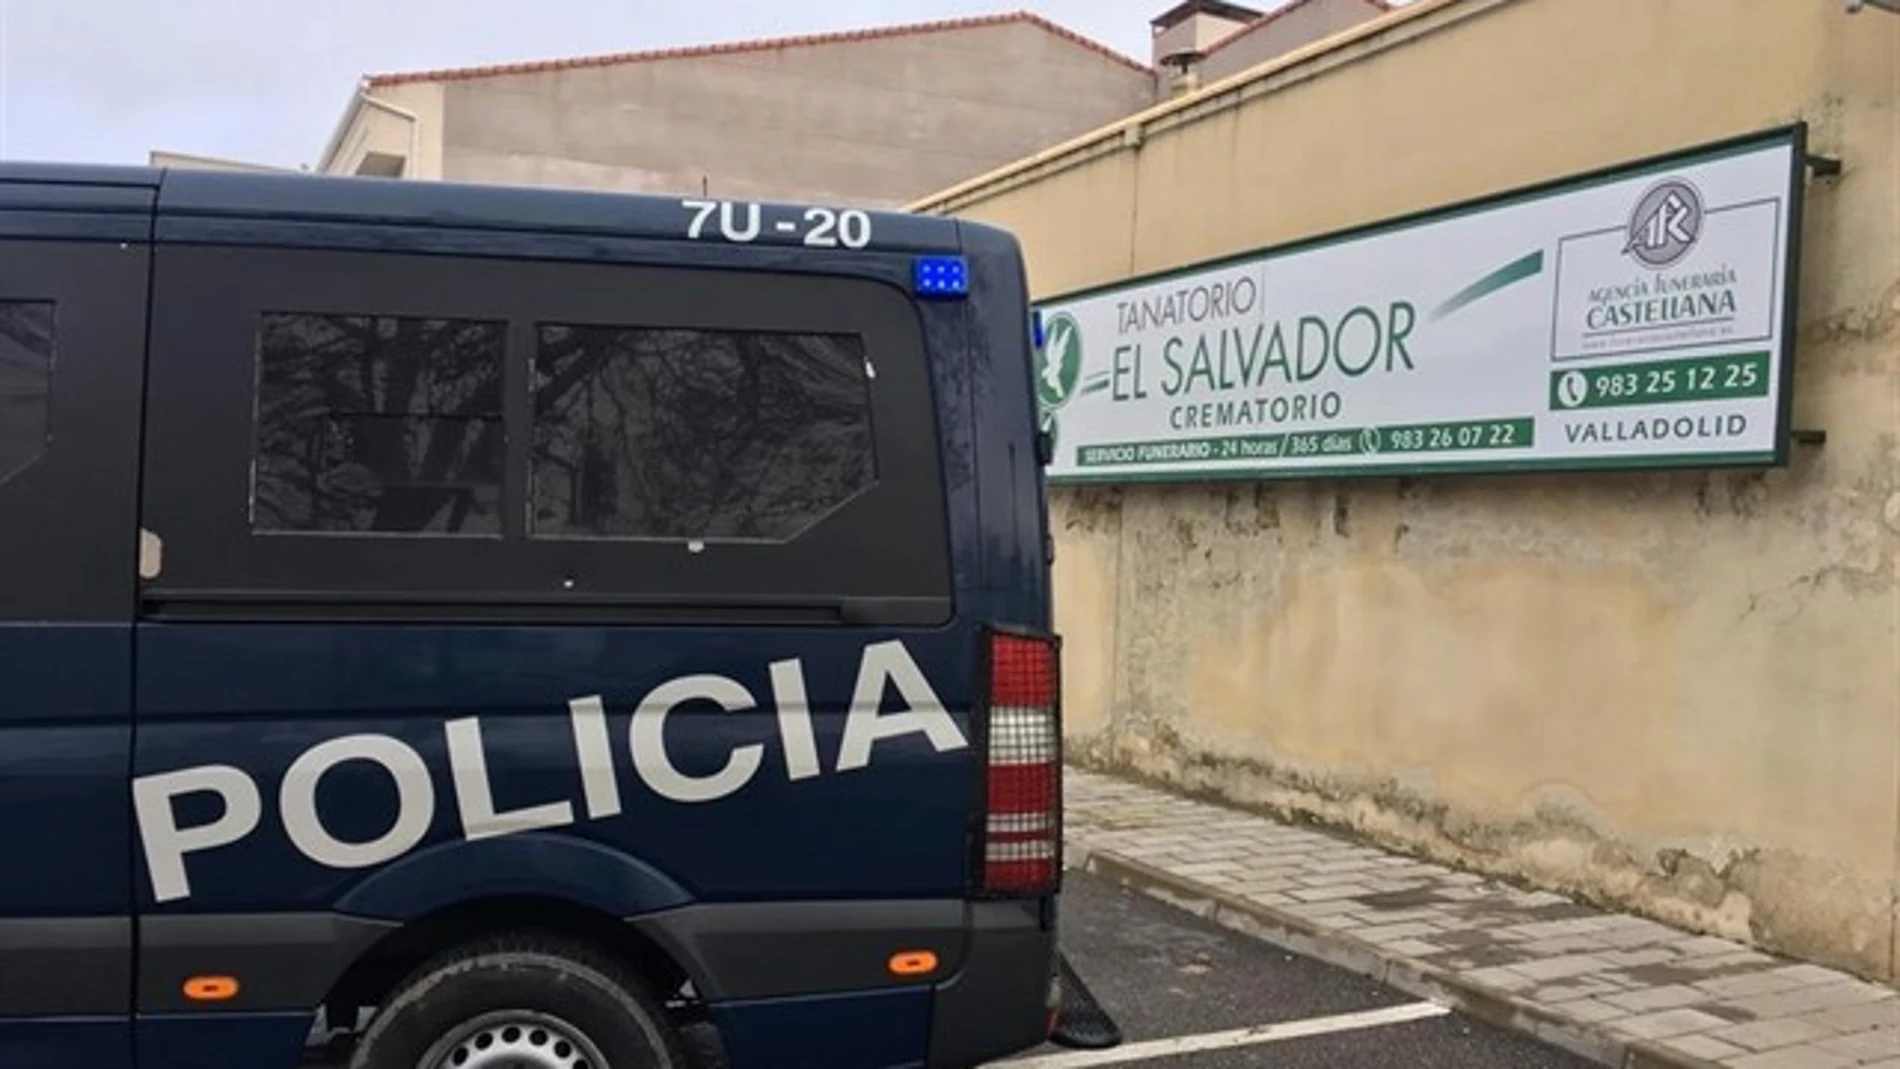 La Policía Nacional investiga varios tanatorios de una funeraria de Valladolid